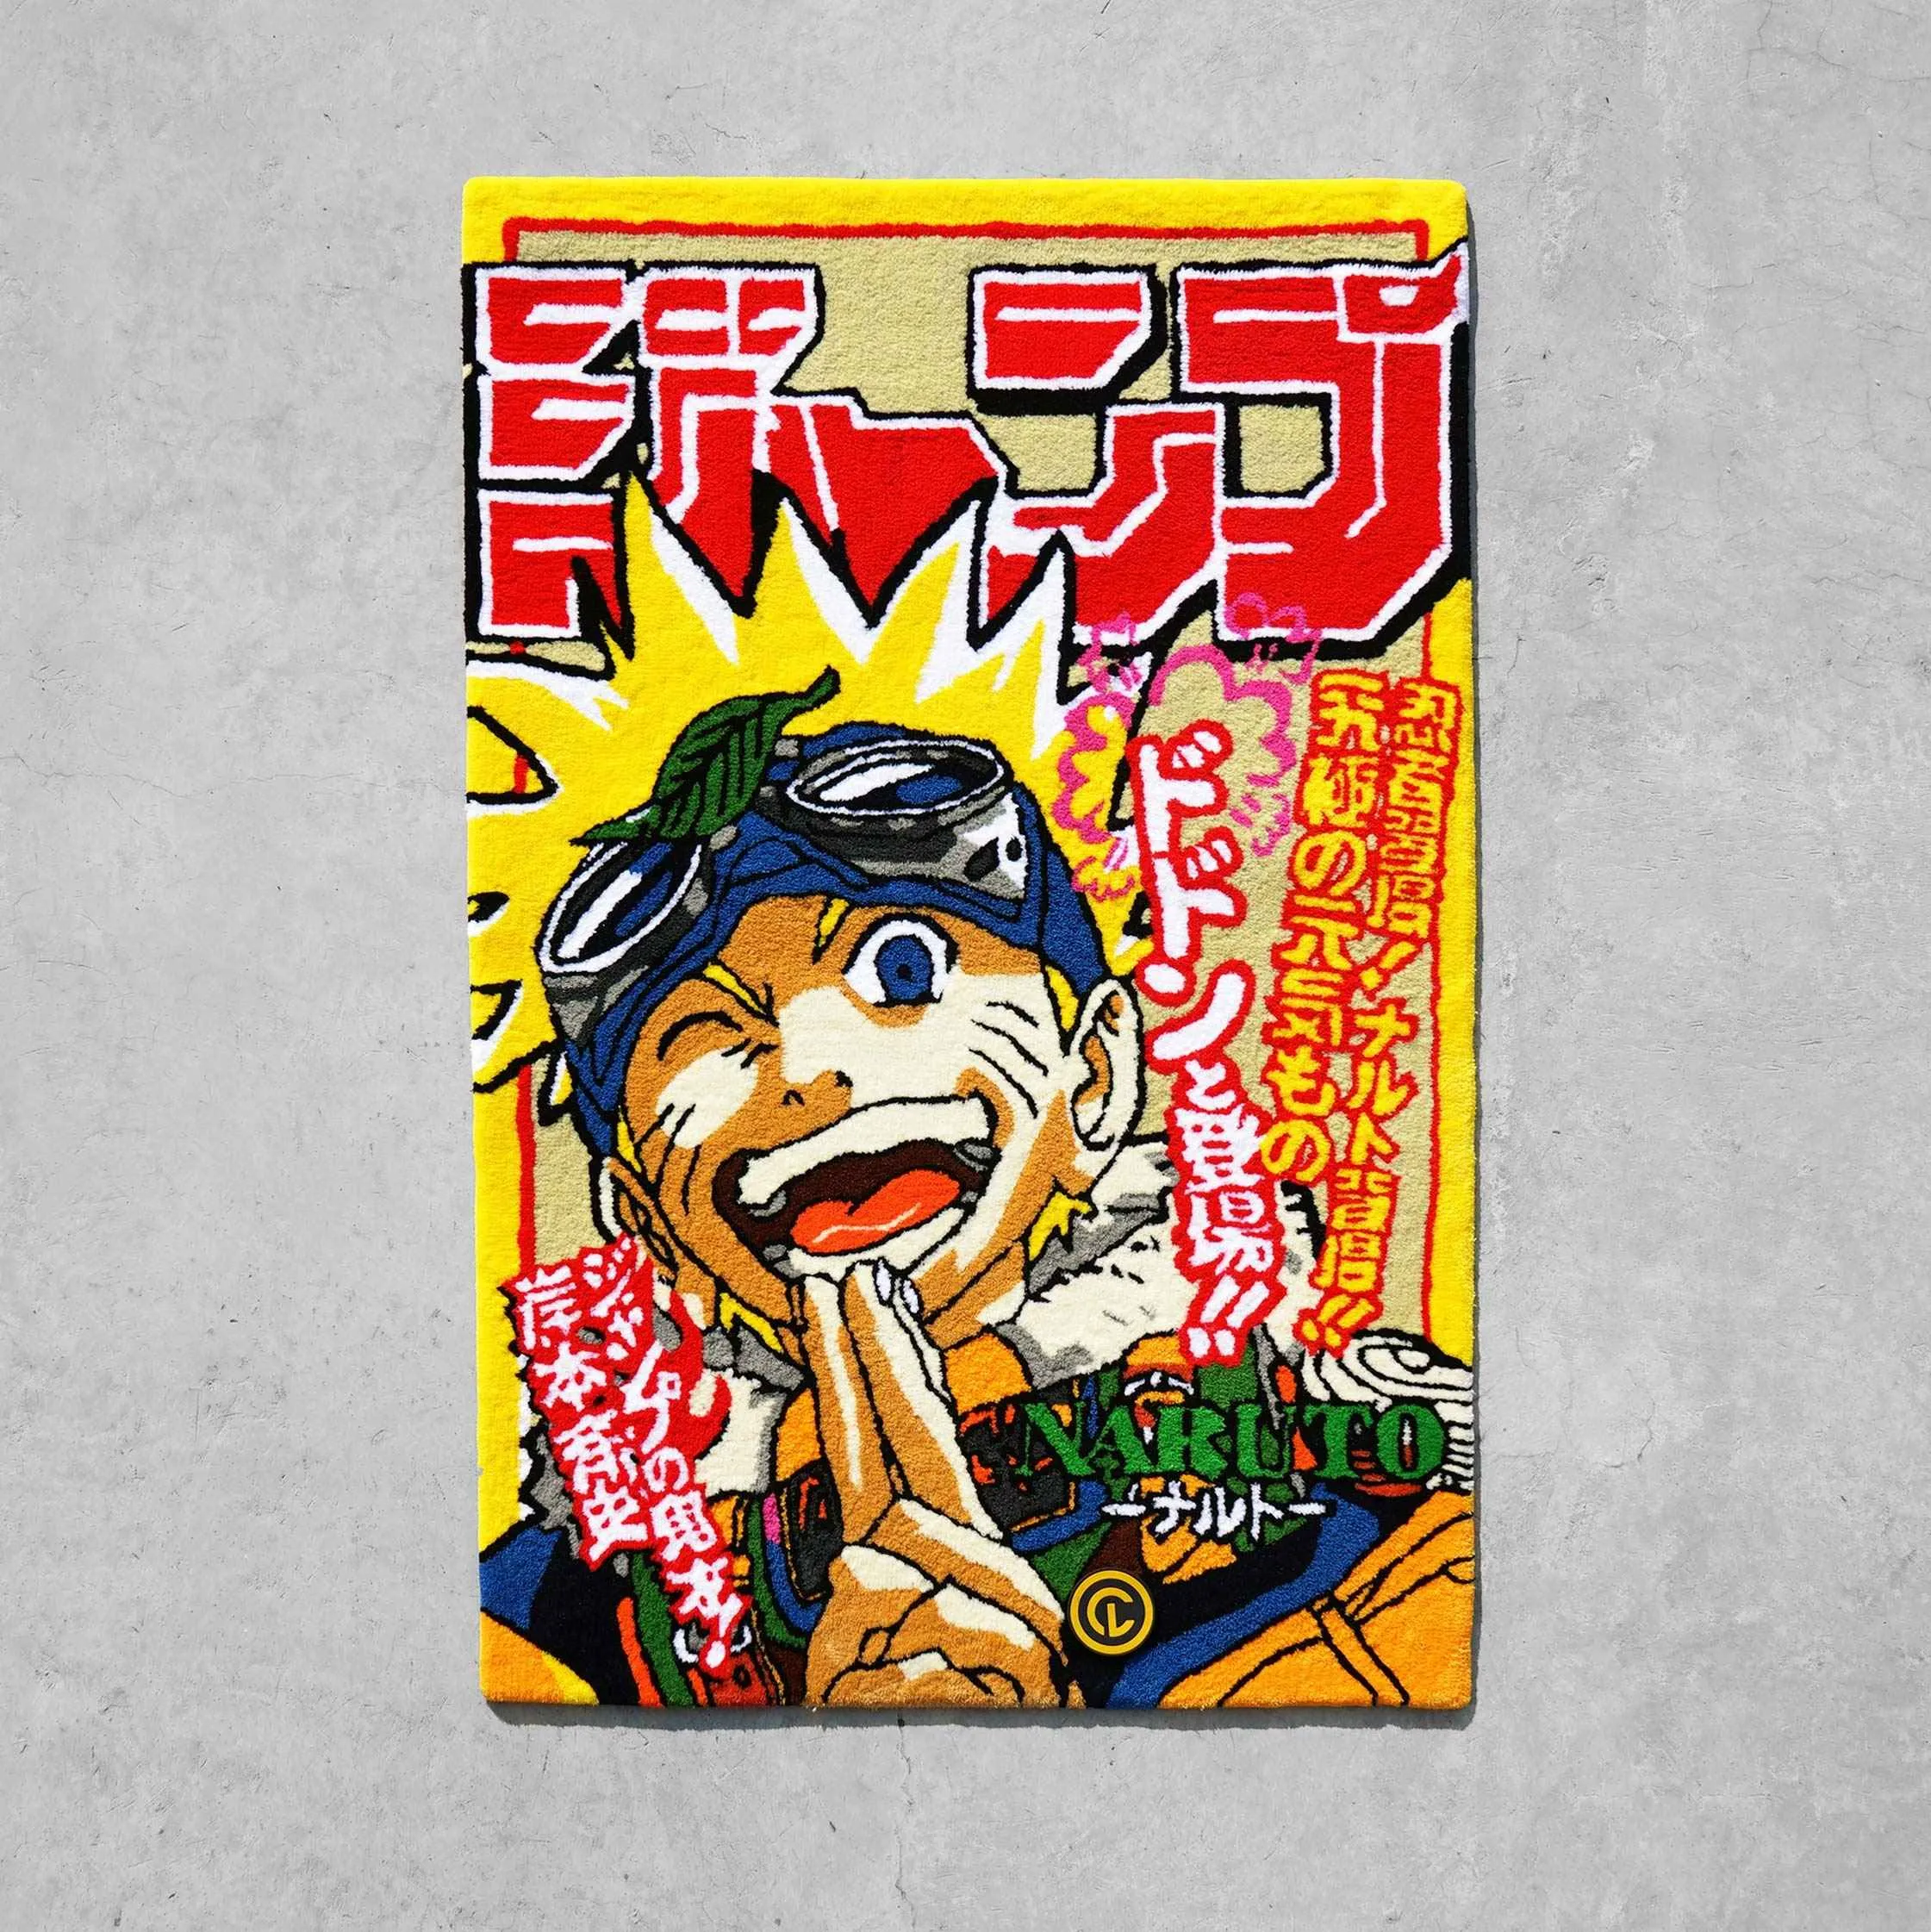 Naruto Magazine